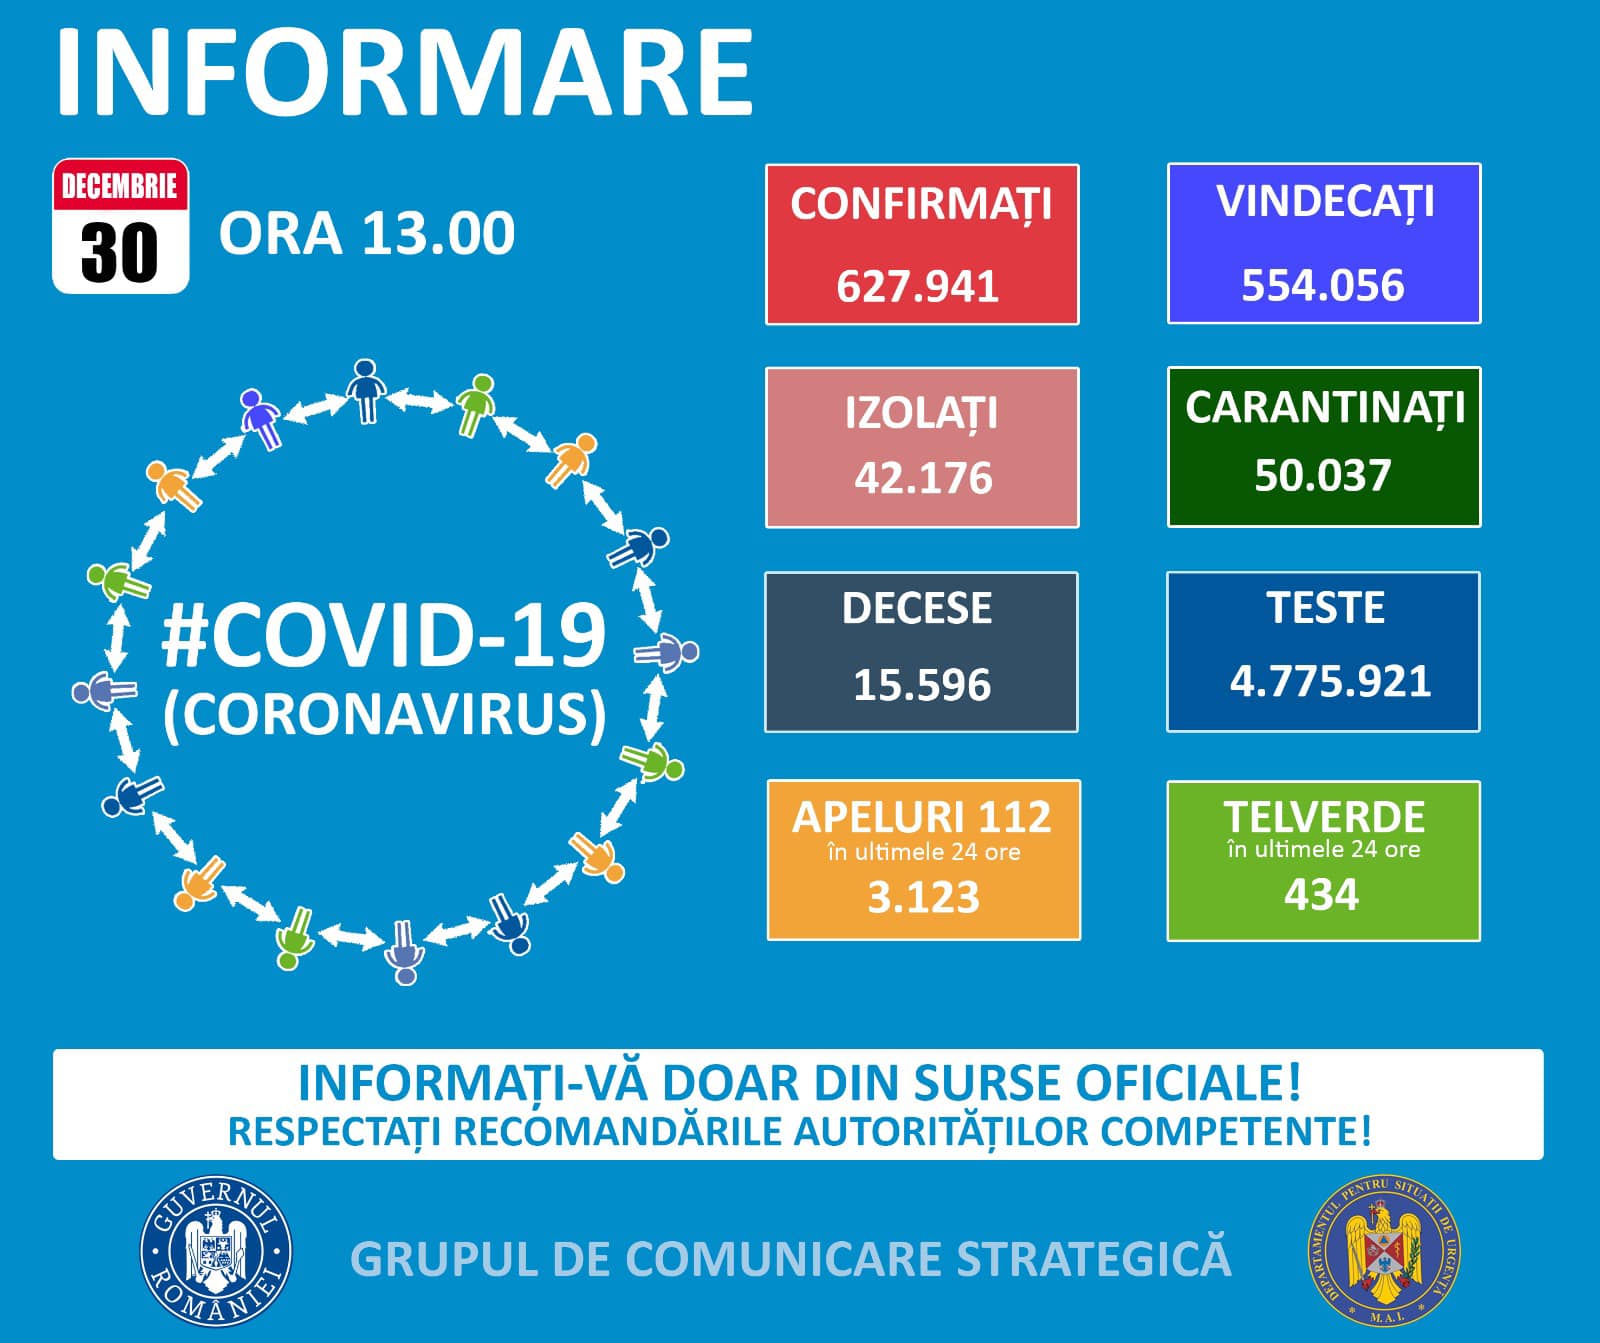 COVID-19 în Oltenia: situația epidemiologică la data de 30 decembrie 2020